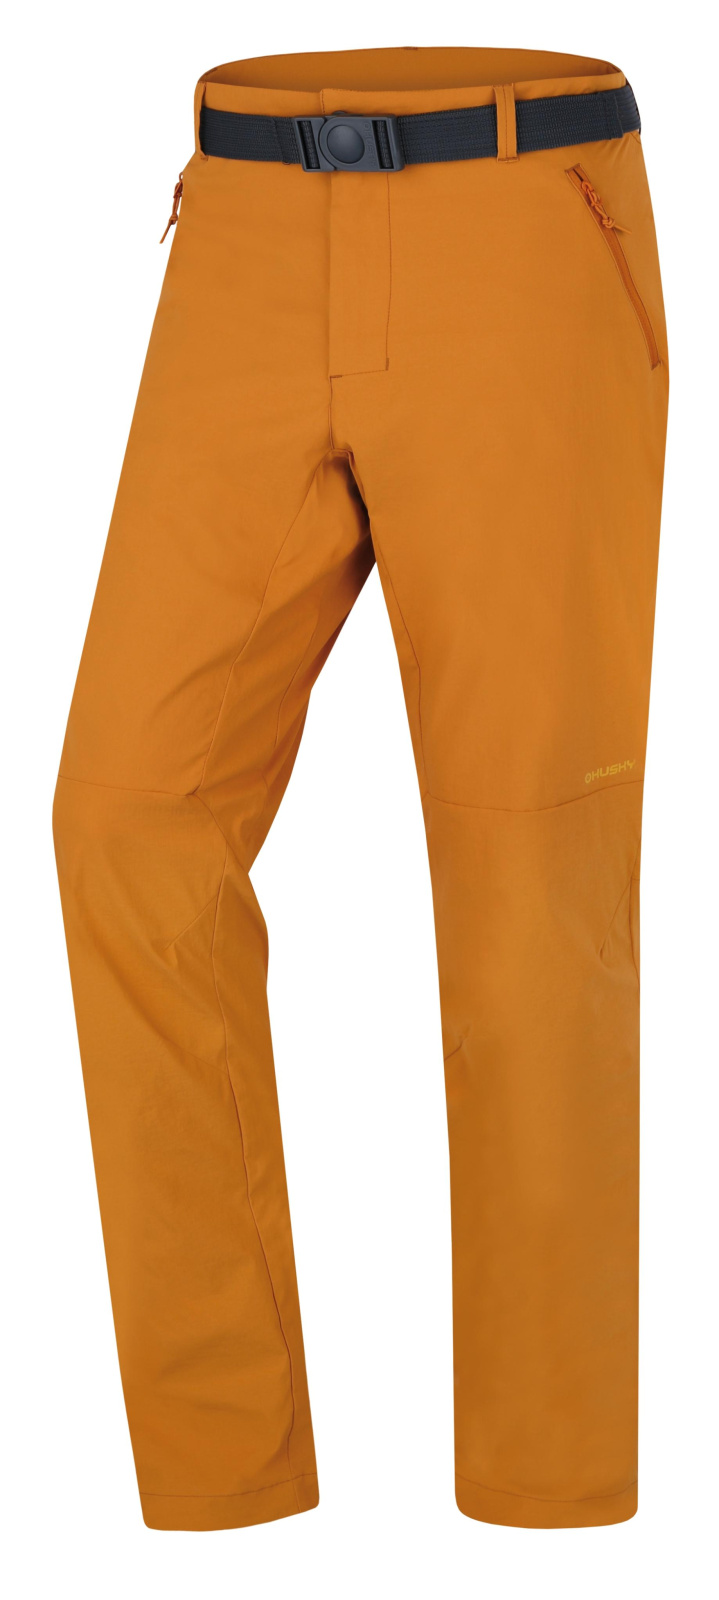 Men's outdoor pants HUSKY Koby M mustard